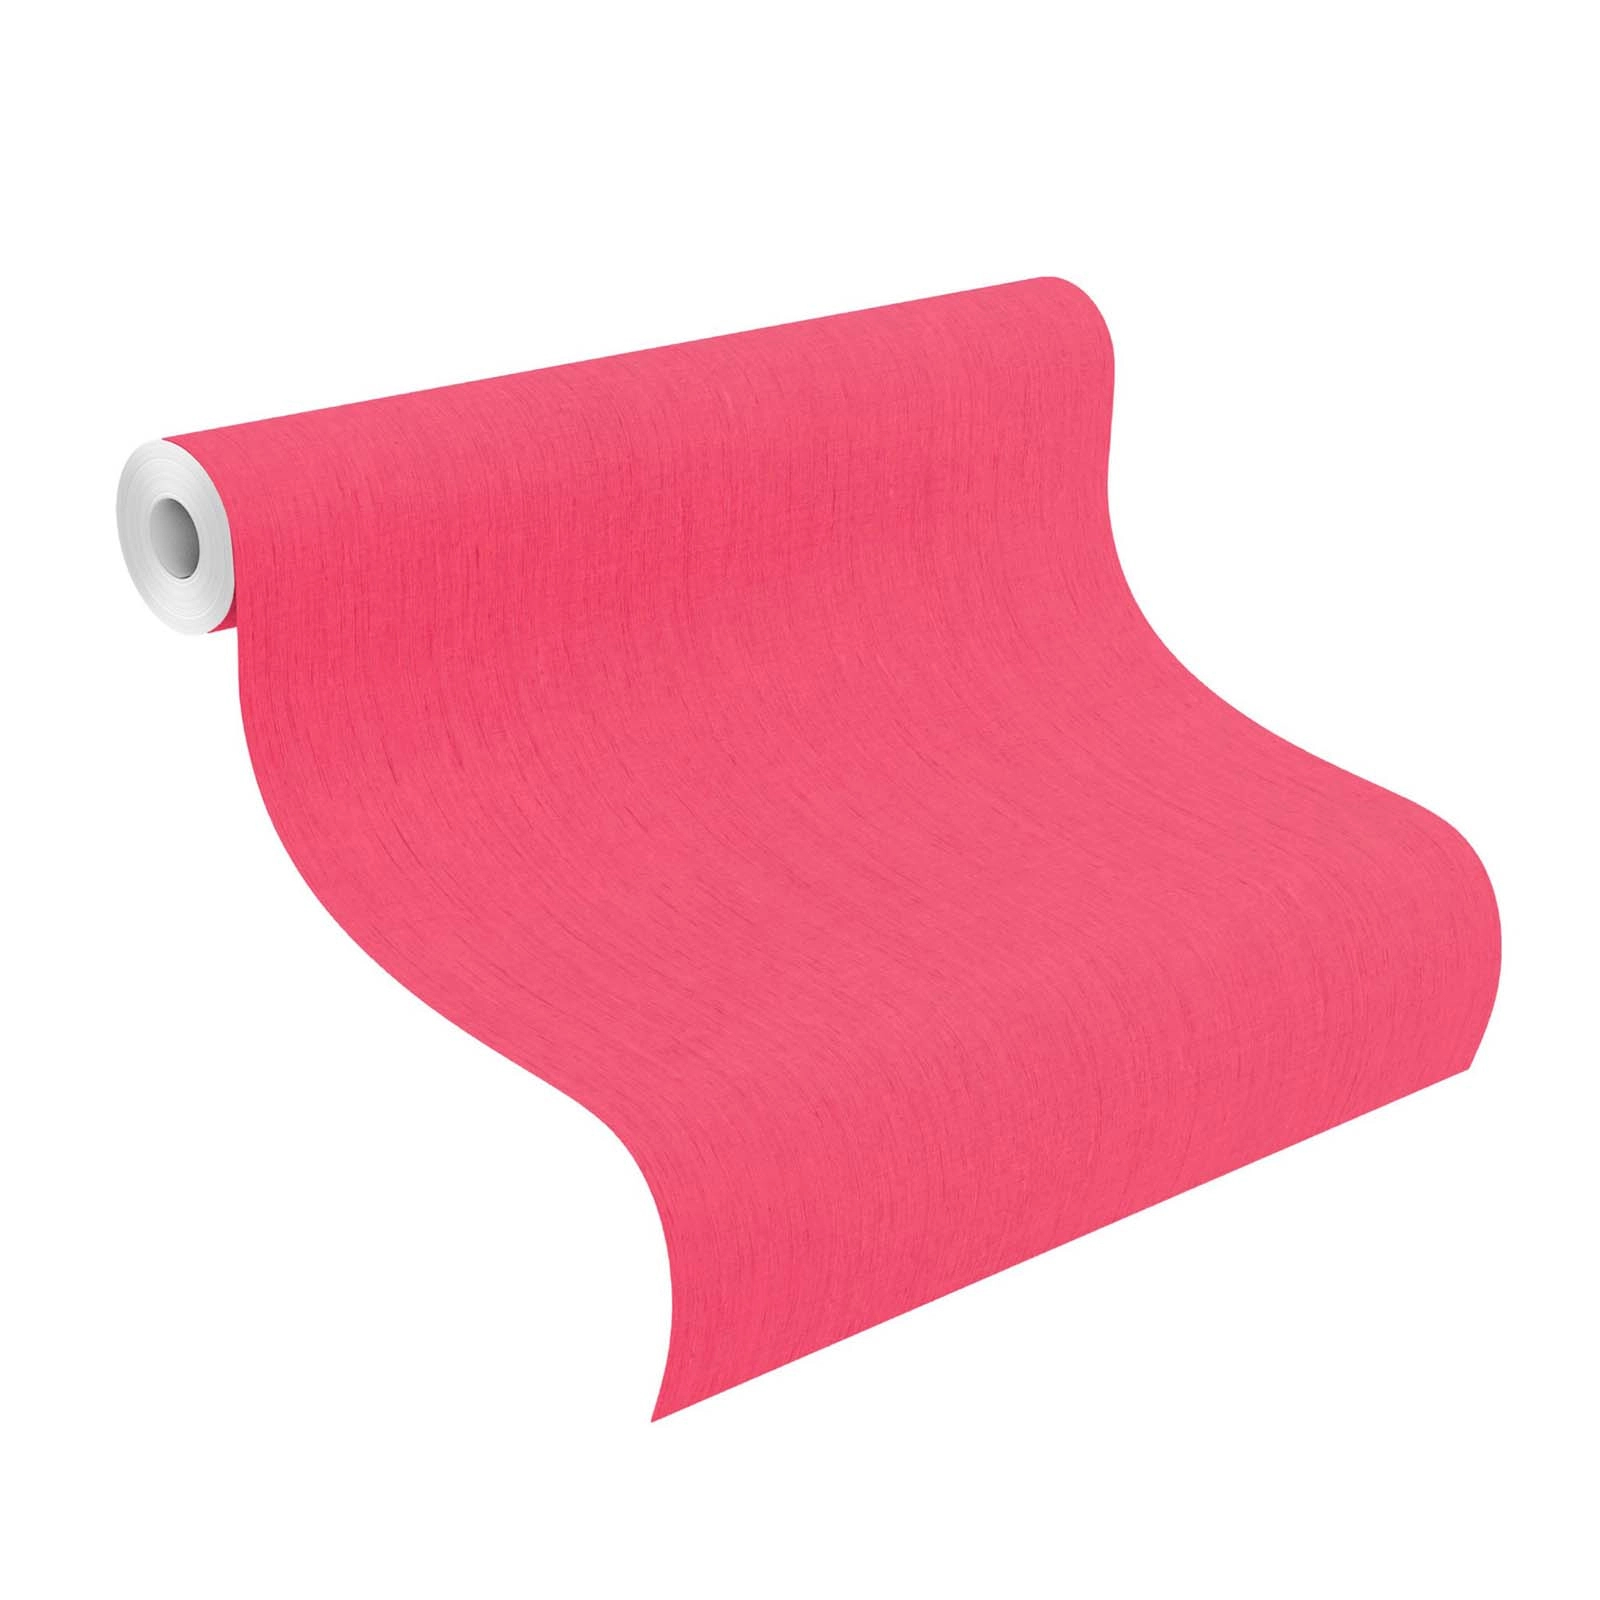 Pink textil hatású vinyl dekor tapéta